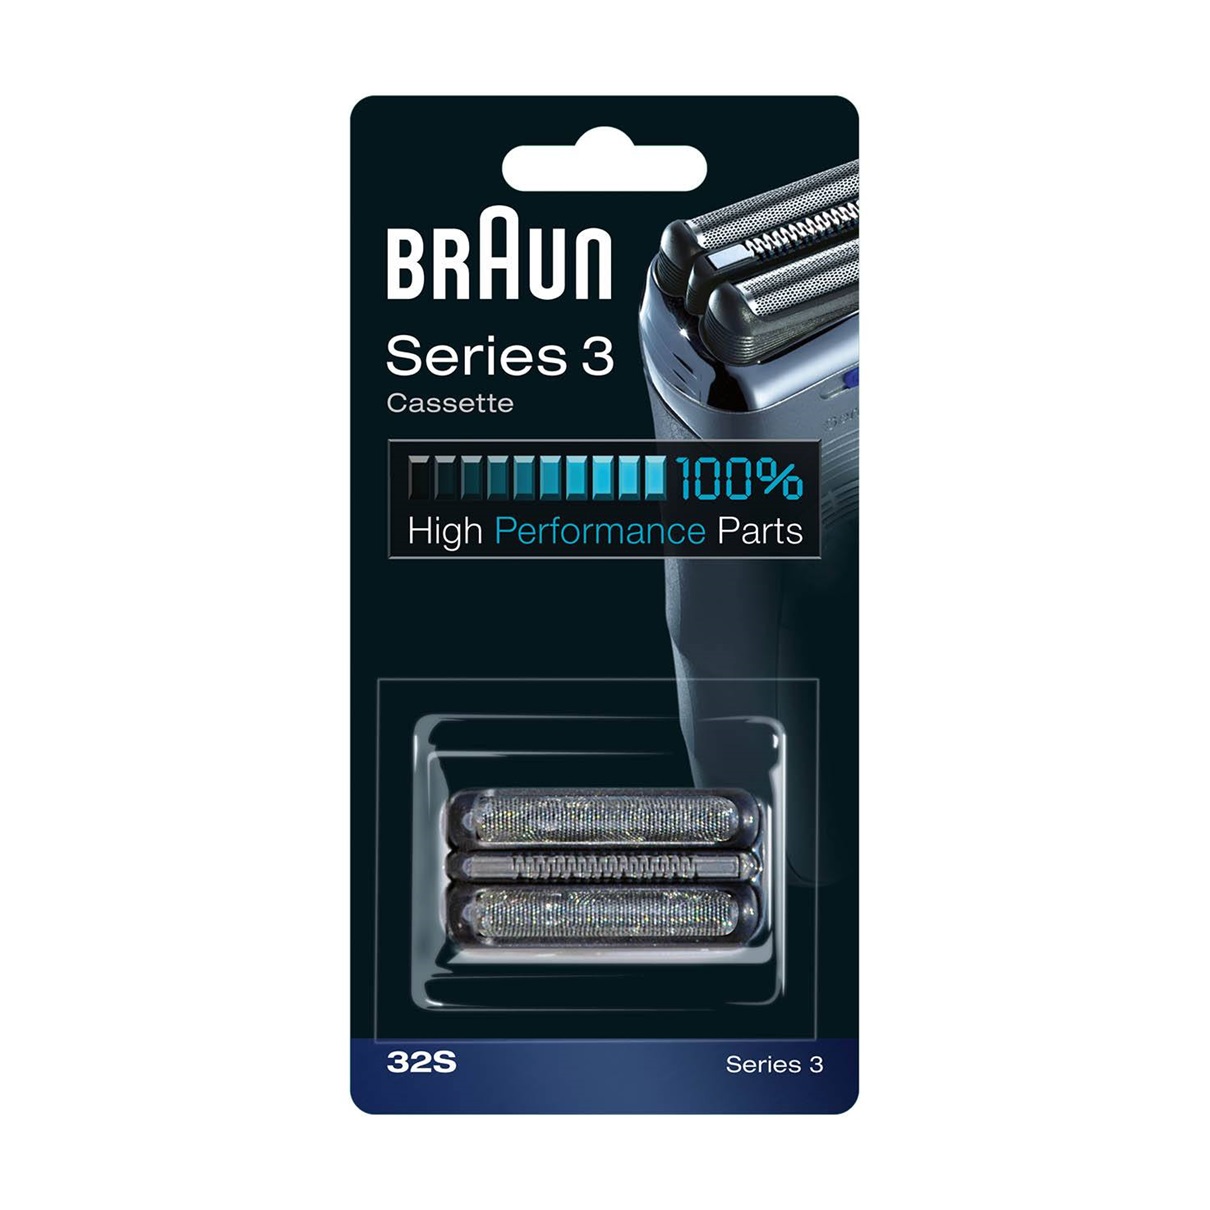 Сетка и режущий блок для бритв Braun 32S сетка и режущий блок braun s5 52b black черная